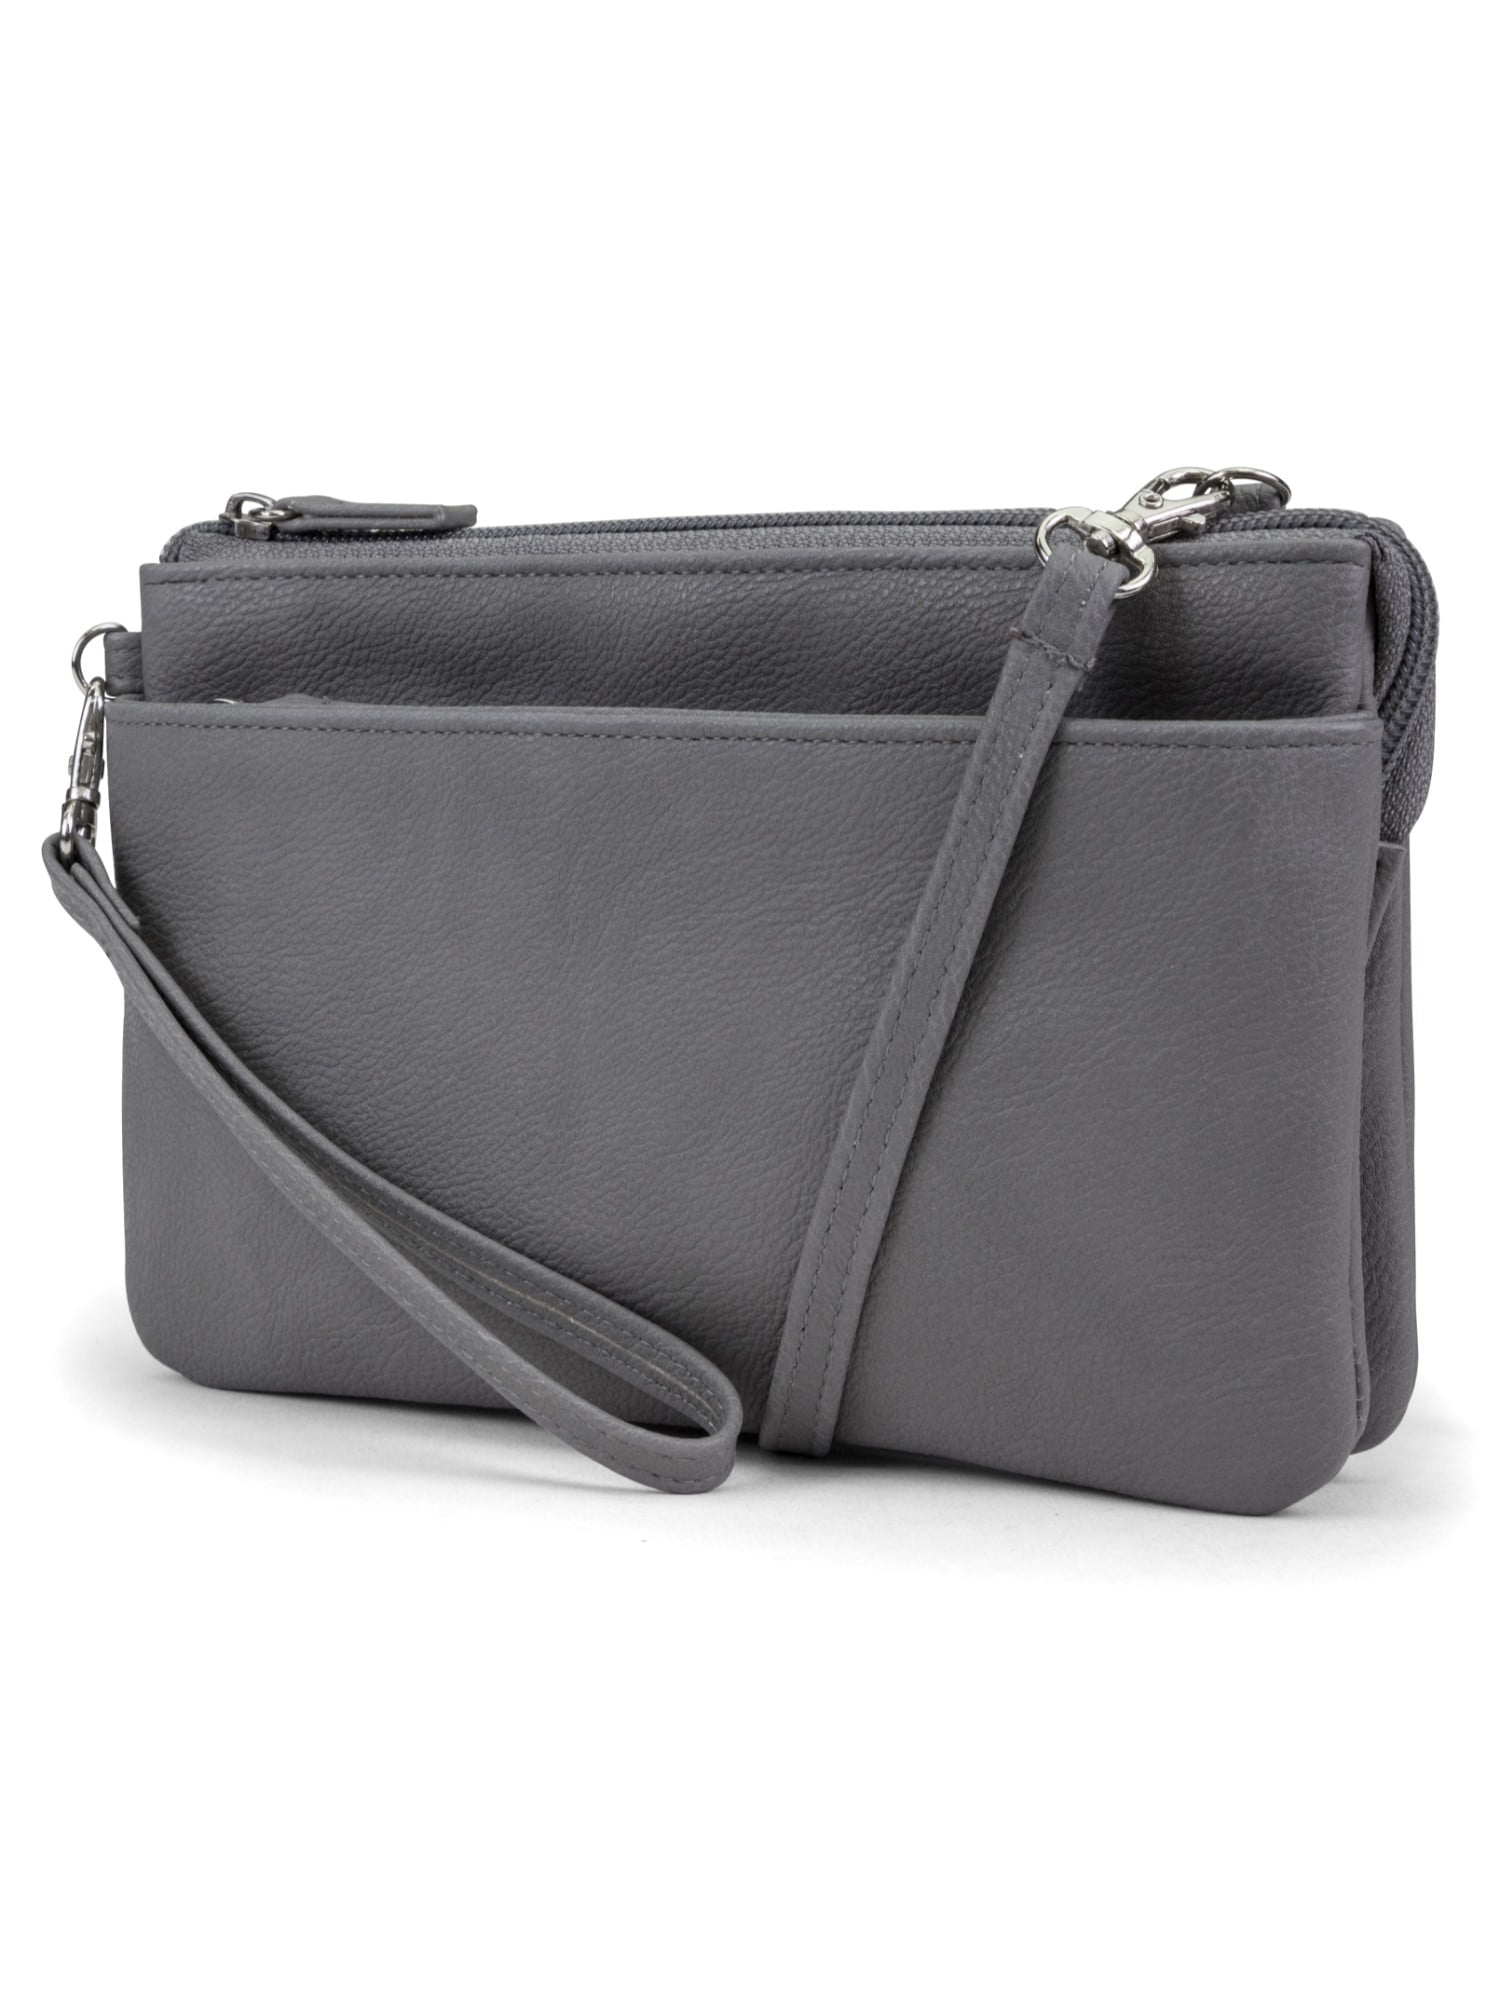 Ani-Theft Smartphone Shoulder Bag With Removable Shoulder Strap Money Bag